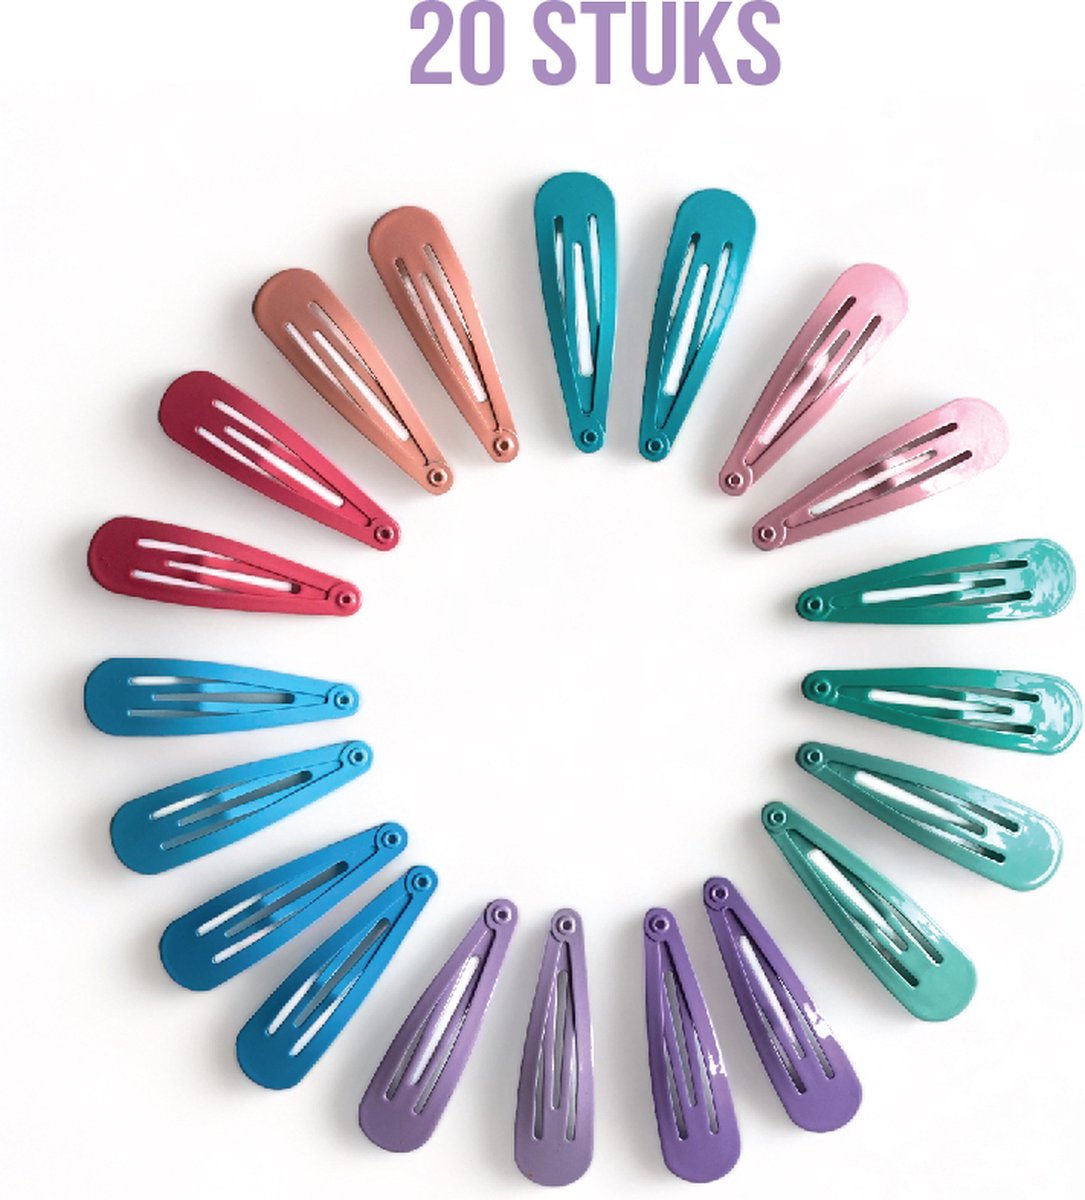 Haarspeldjes - meisje - peuter - regenboog - roze - paars - lila - turquoise - blauw - 20 stuks